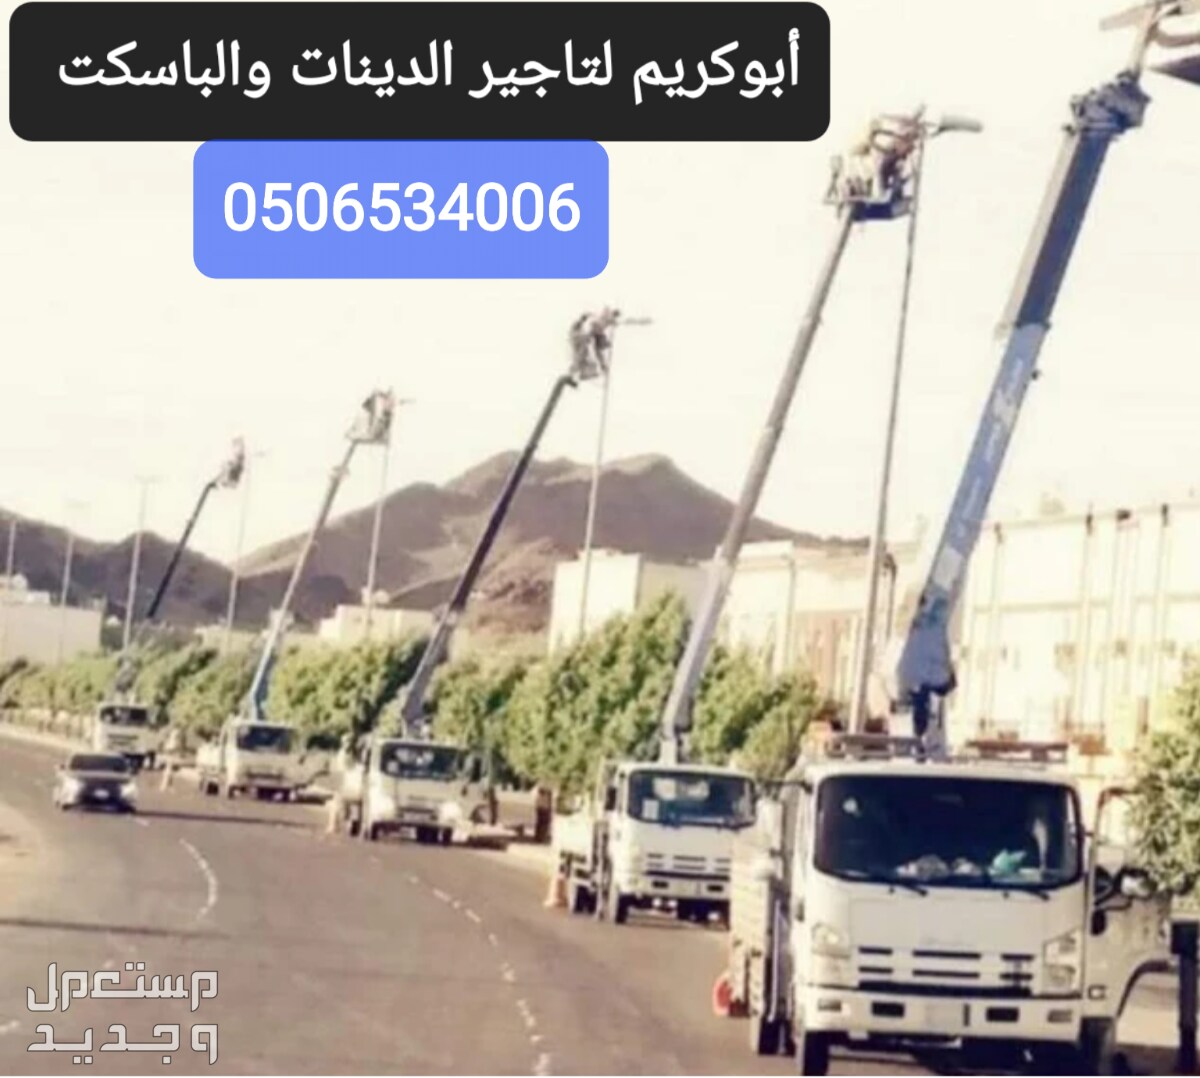 الرياض حي الفيصليه شارع الدهماء  رافعات مقصيه كهربائيّة رافعات سطحه ونش باسكت بوم تراك نقل